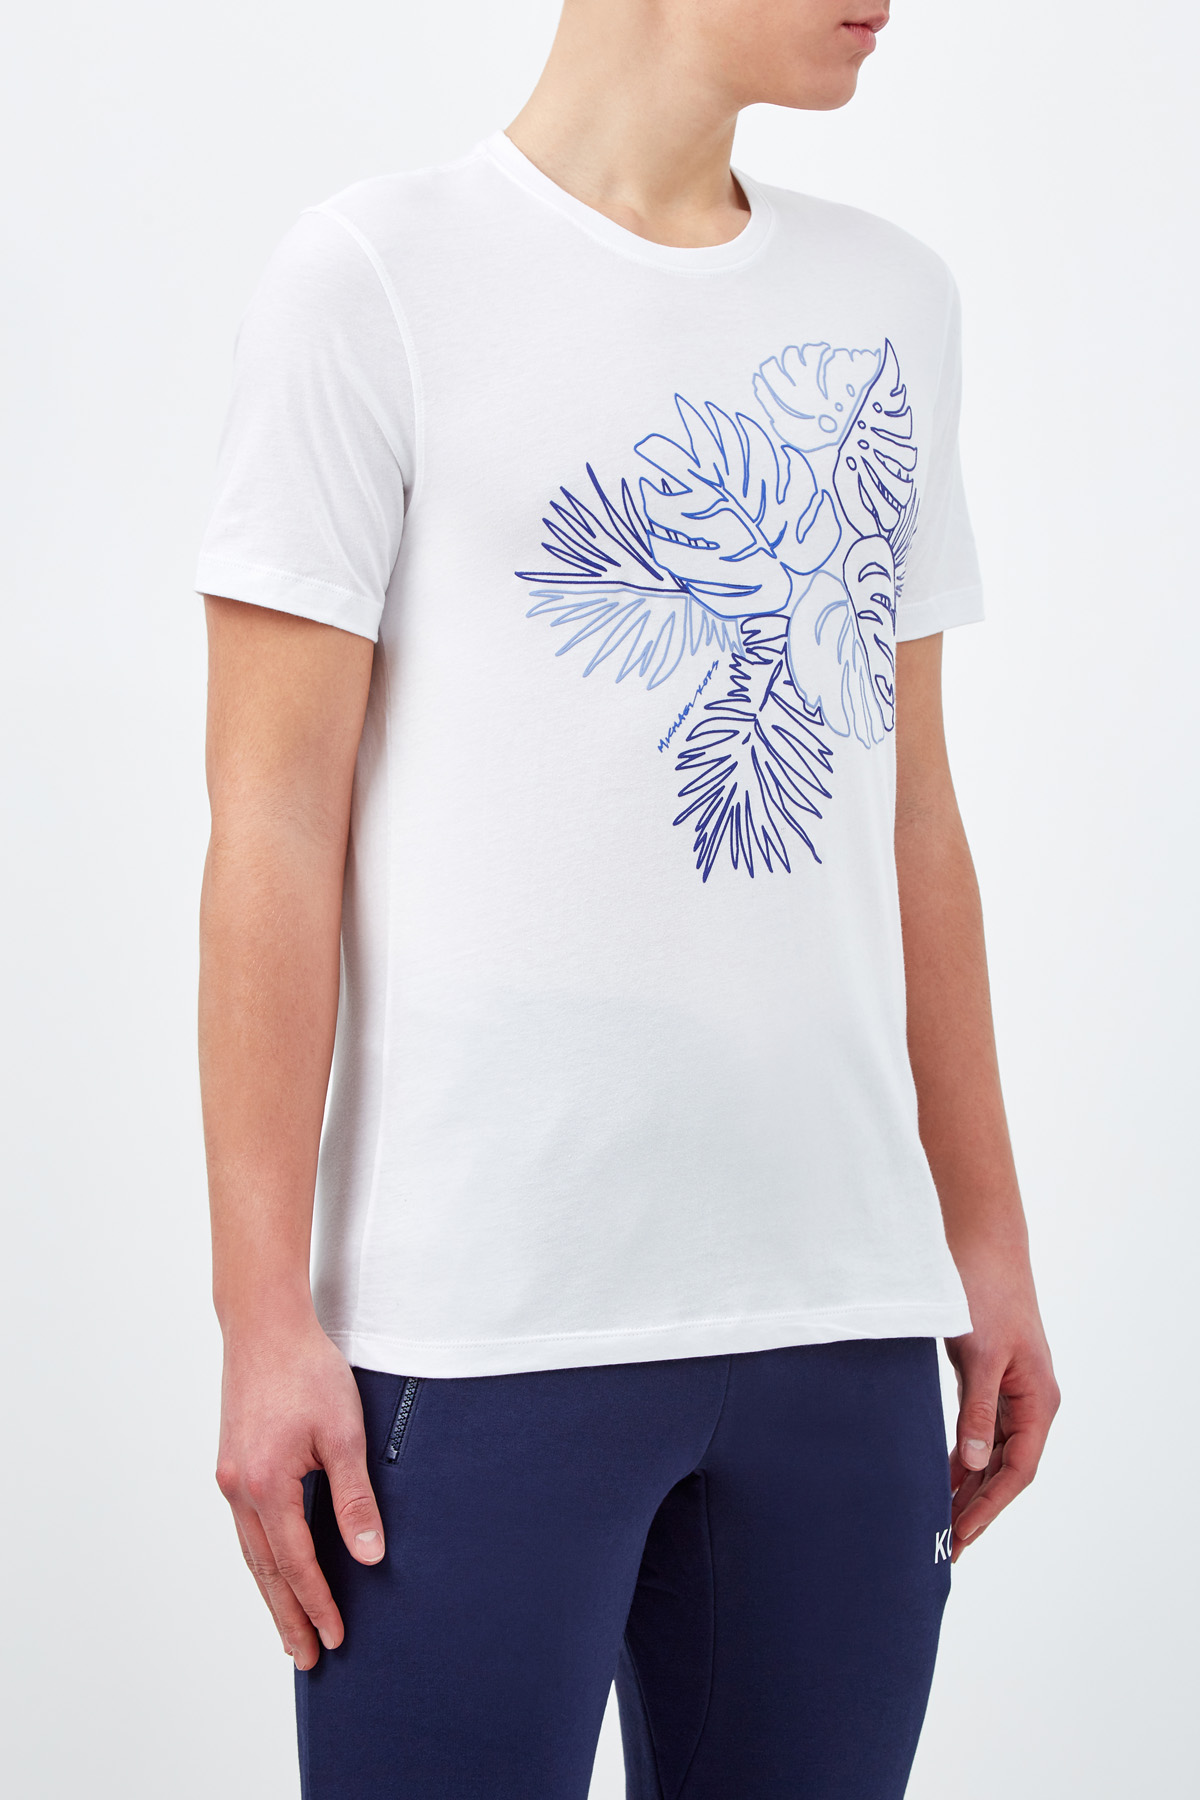 Хлопковая футболка с объемным принтом MICHAEL KORS, цвет белый, размер XL;2XL - фото 3